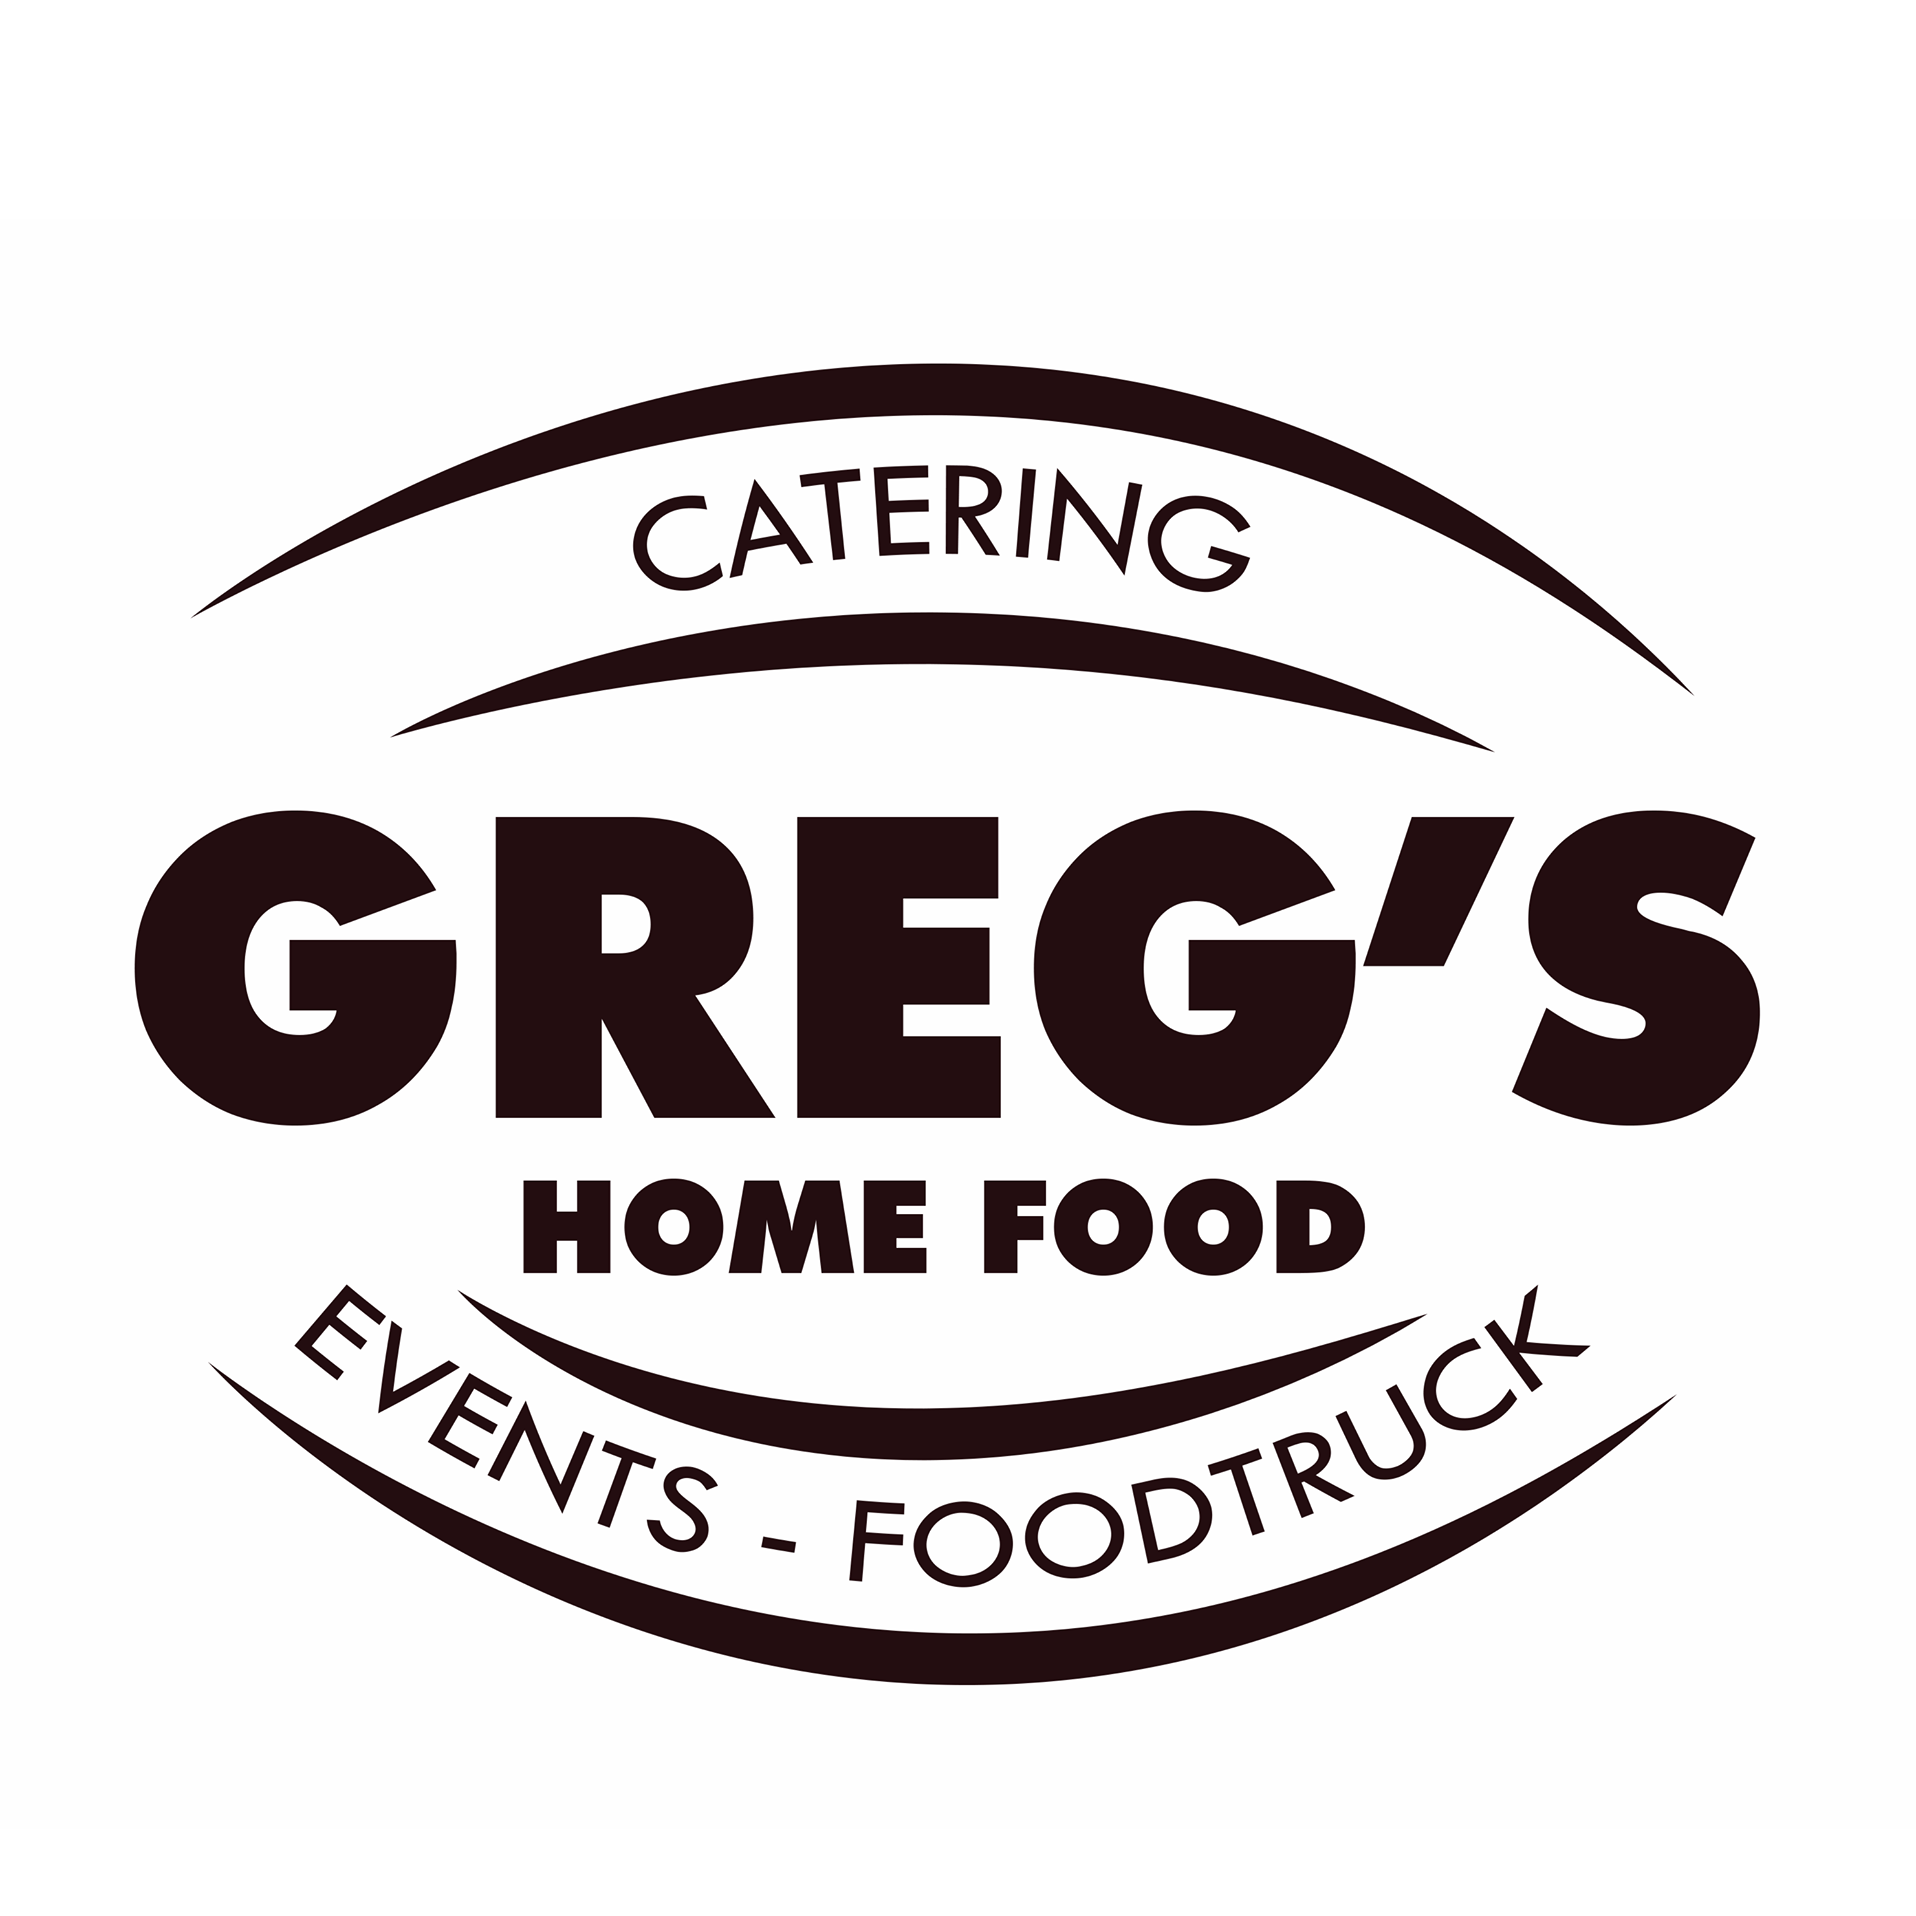 Gregs homefood